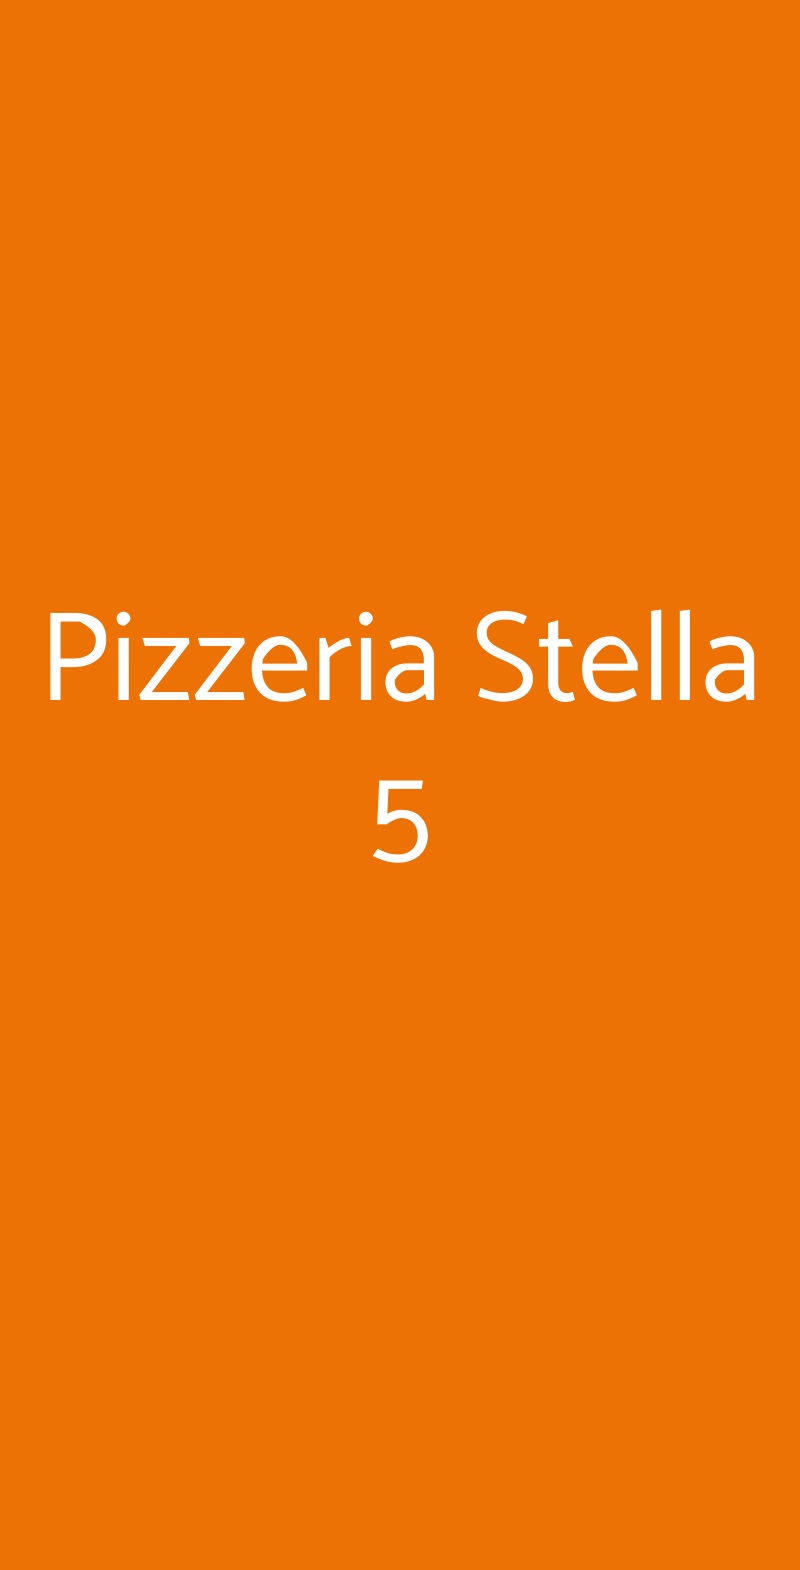 Pizzeria Stella 5 Cologno Monzese menù 1 pagina